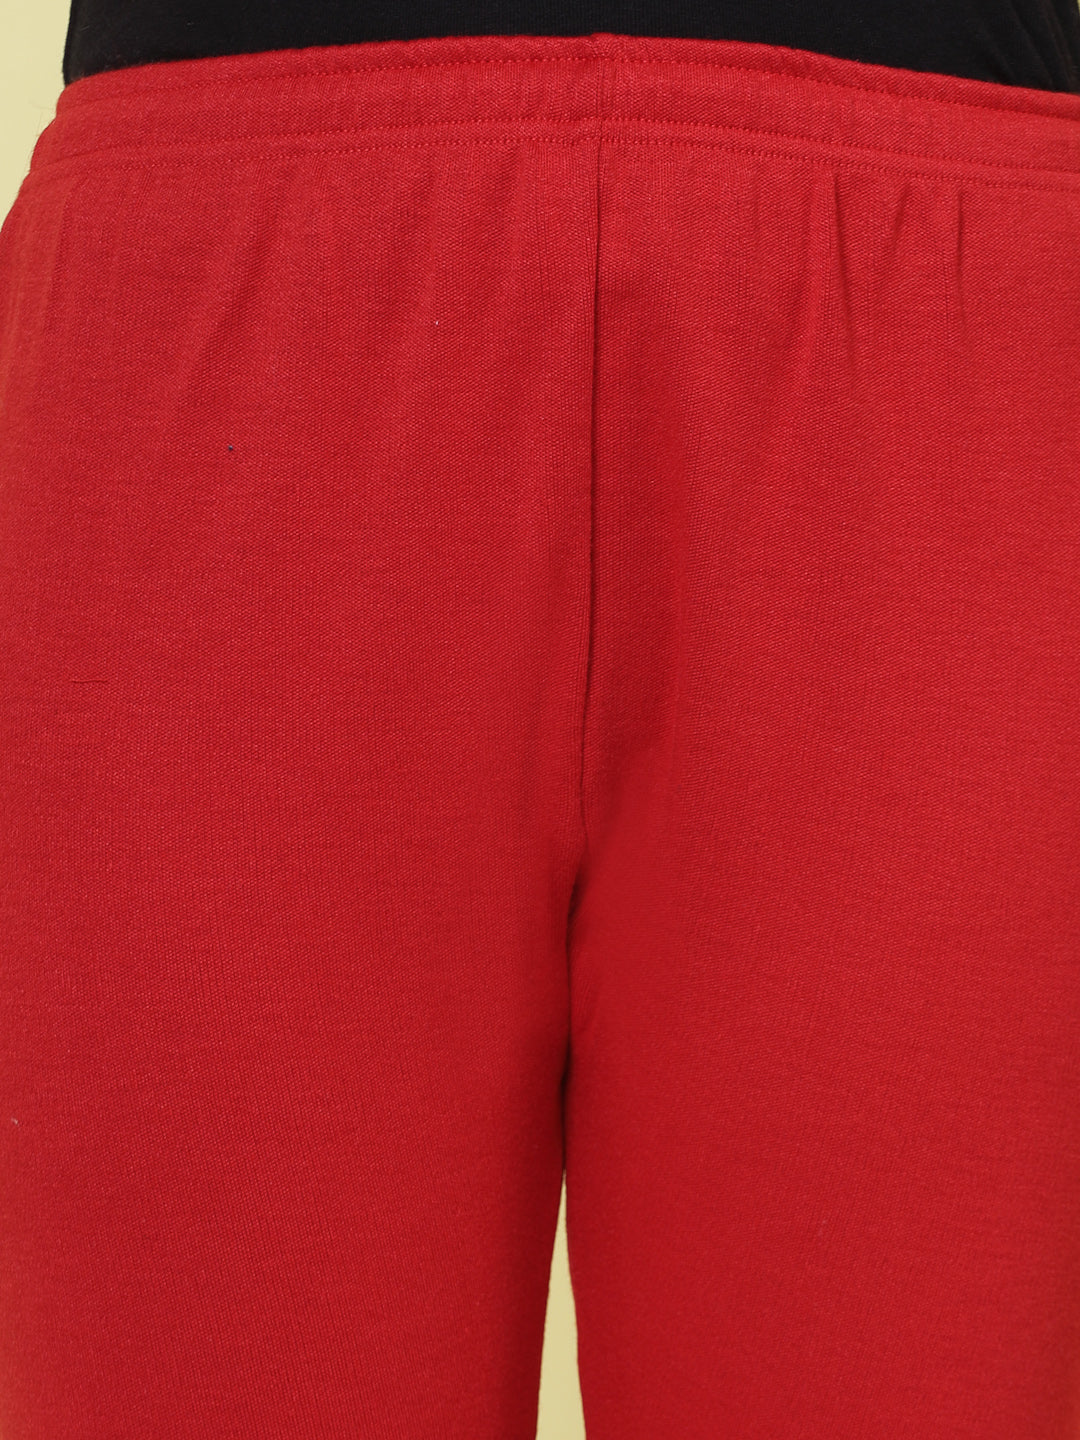 Magenta & Red Solid Woollen Leggings (Pack of 2)